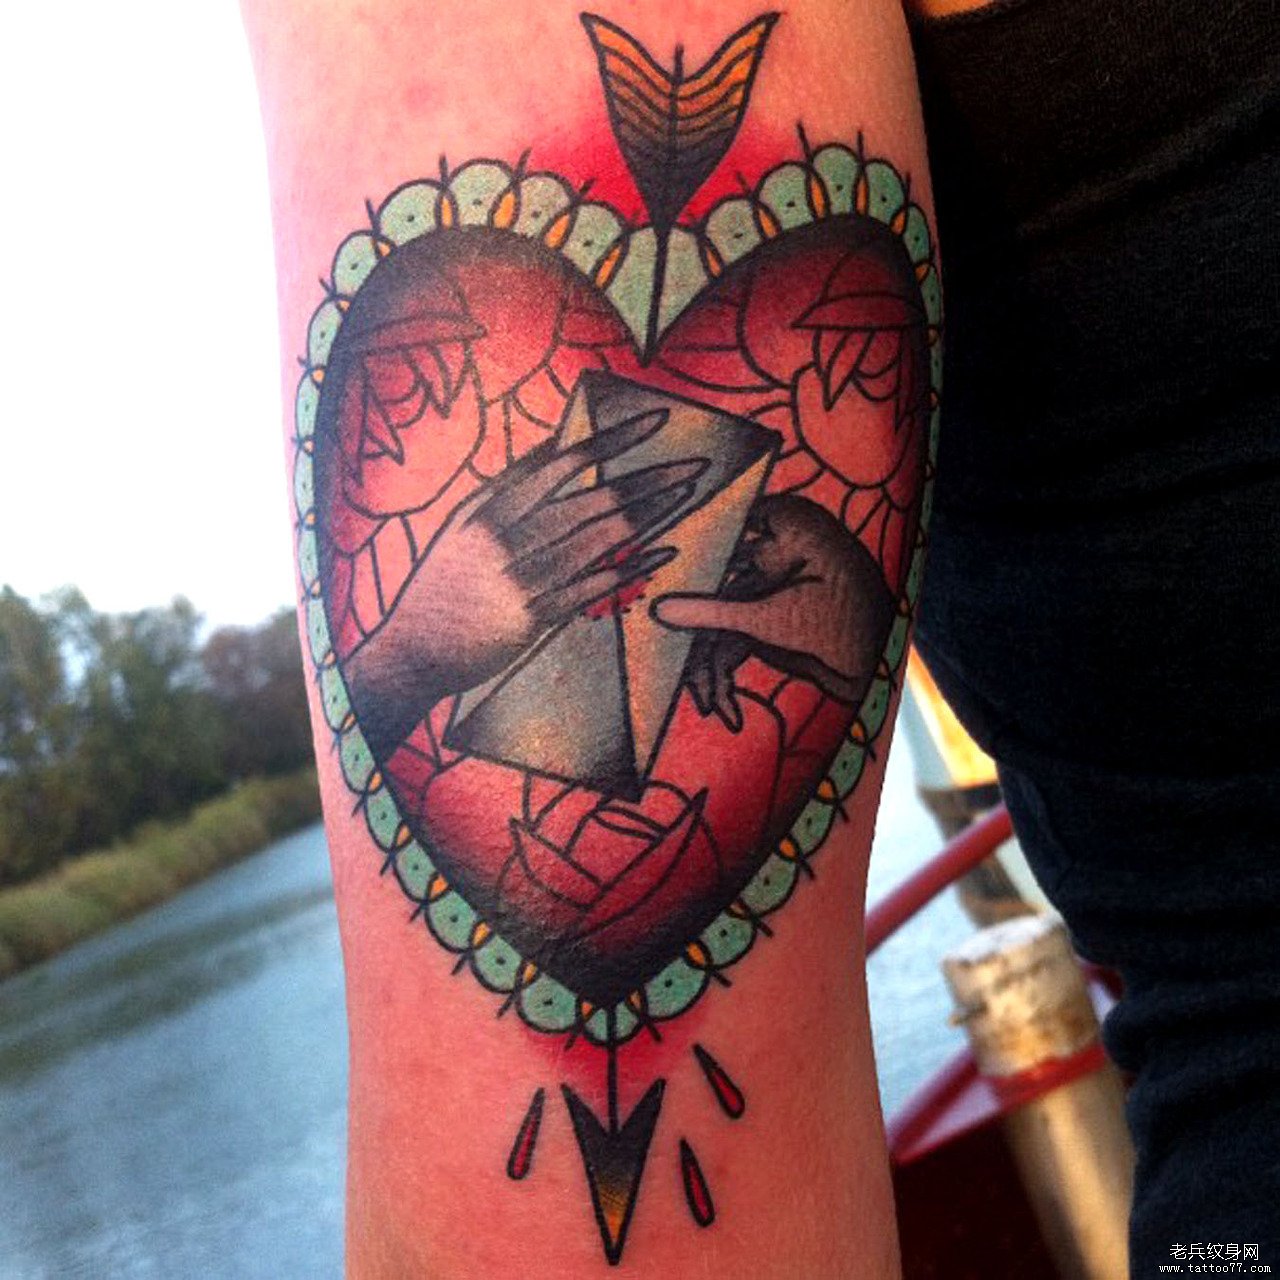 老兵纹身店分享小臂上一款爱心纹身图案